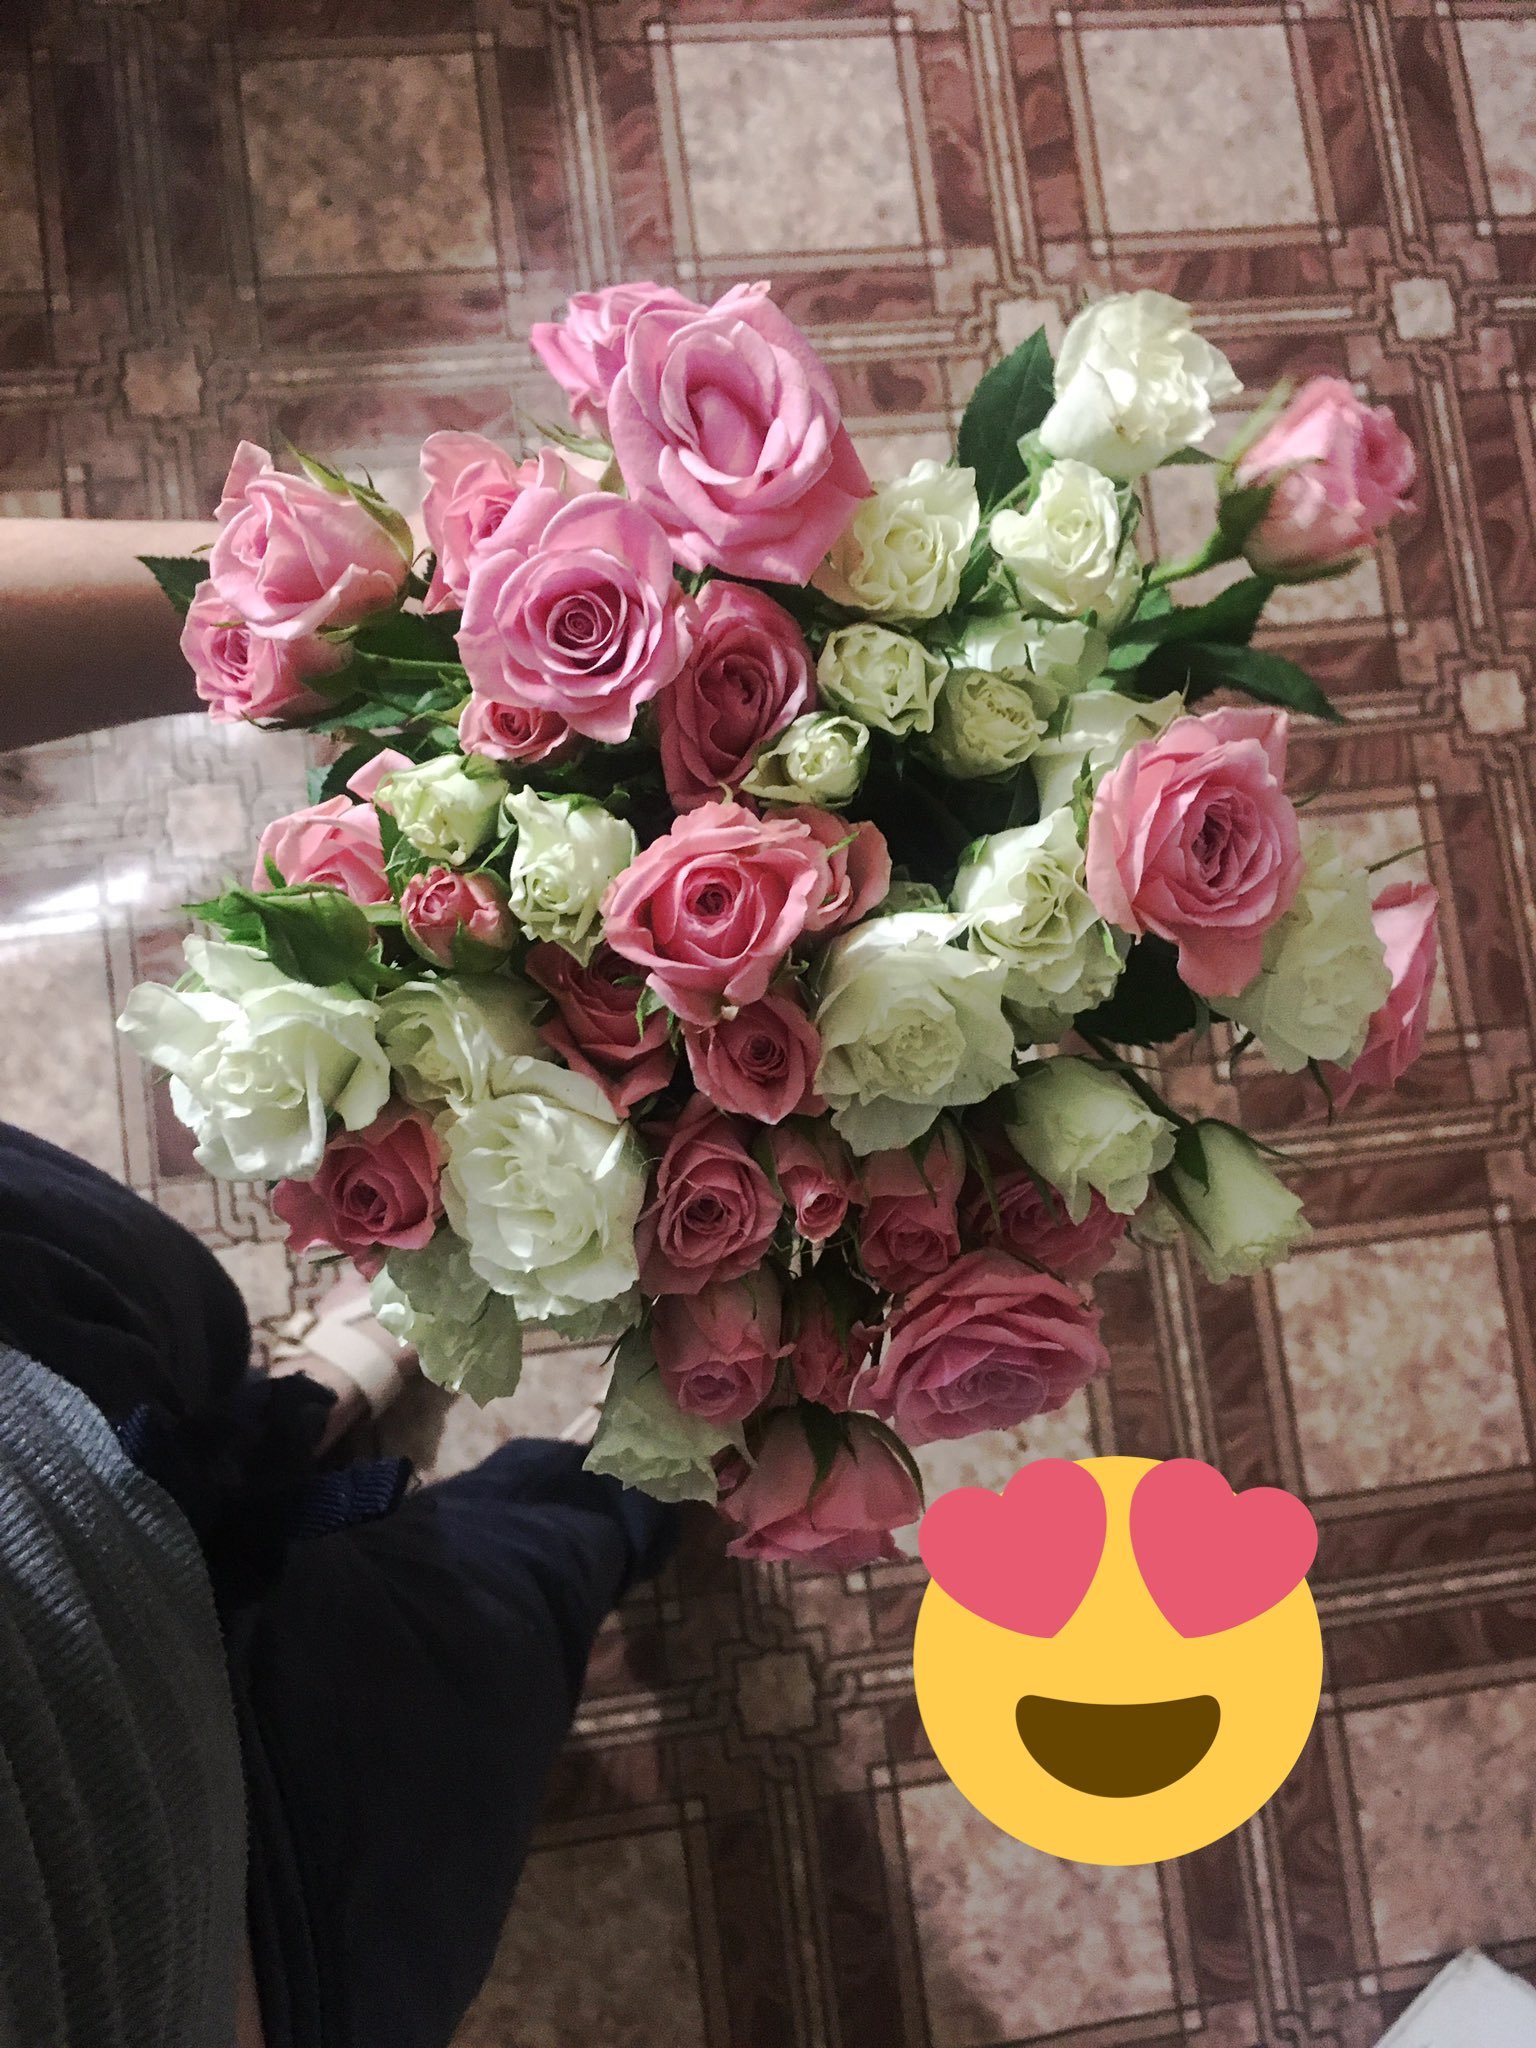 Сегодня мне подарили цветы. Букет в руках у девушки. Реальные букеты цветов. Букет дома. Цветы в руках у девушки.